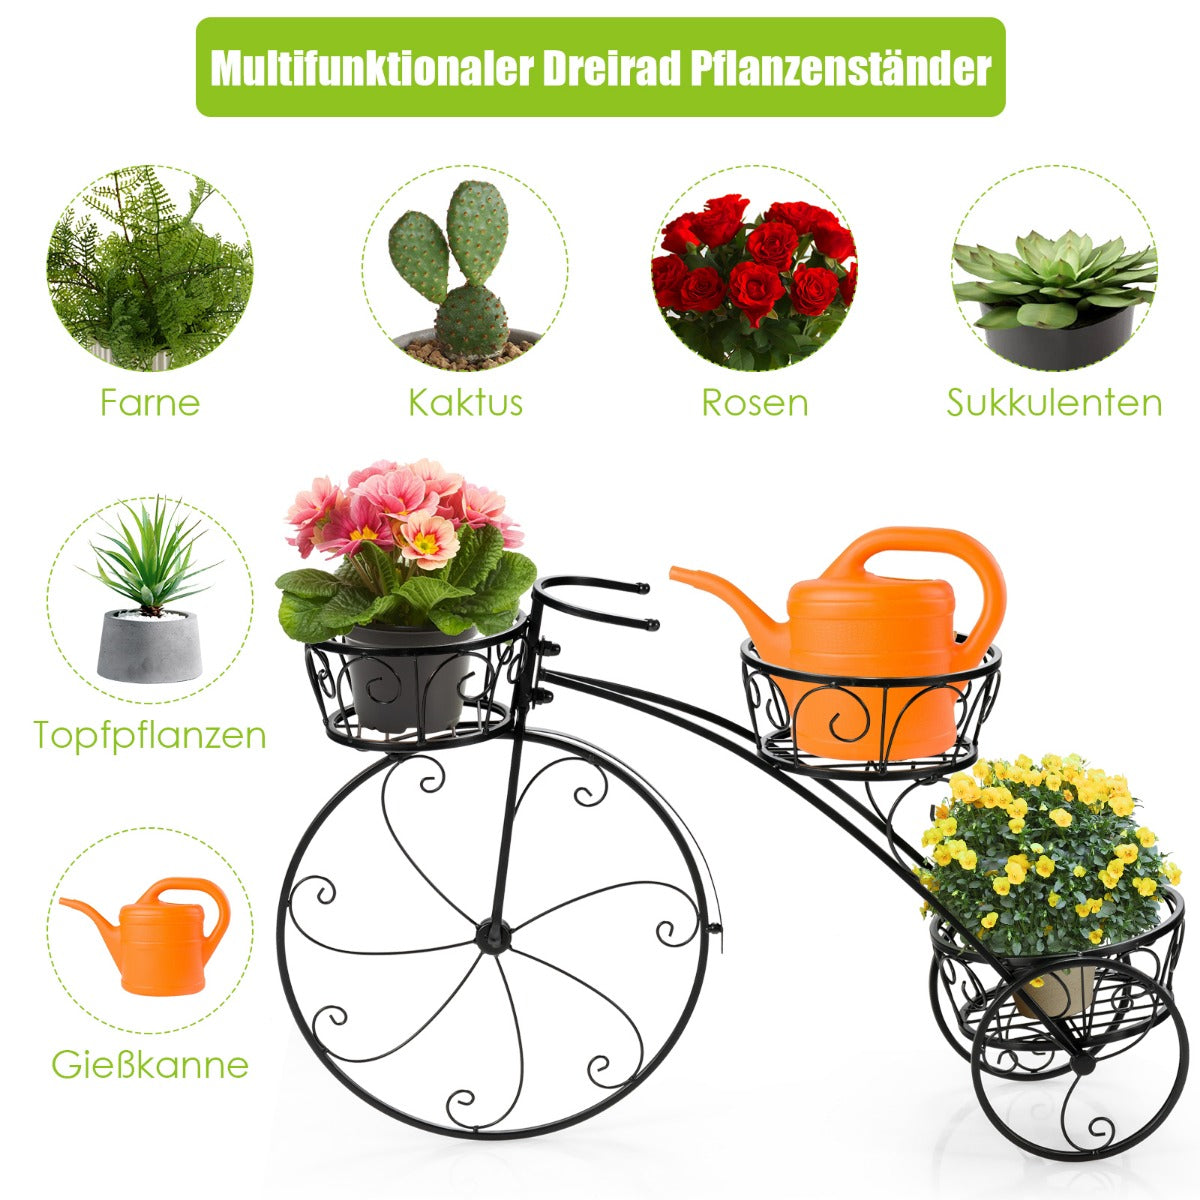 Pflanzenregal, Blumenregal, Dreirad-Pflanzenständer, Fahrrad-Pflanzenhalter im Pariser Stil 80 x 52 cm, Schwarz, Costway, 1